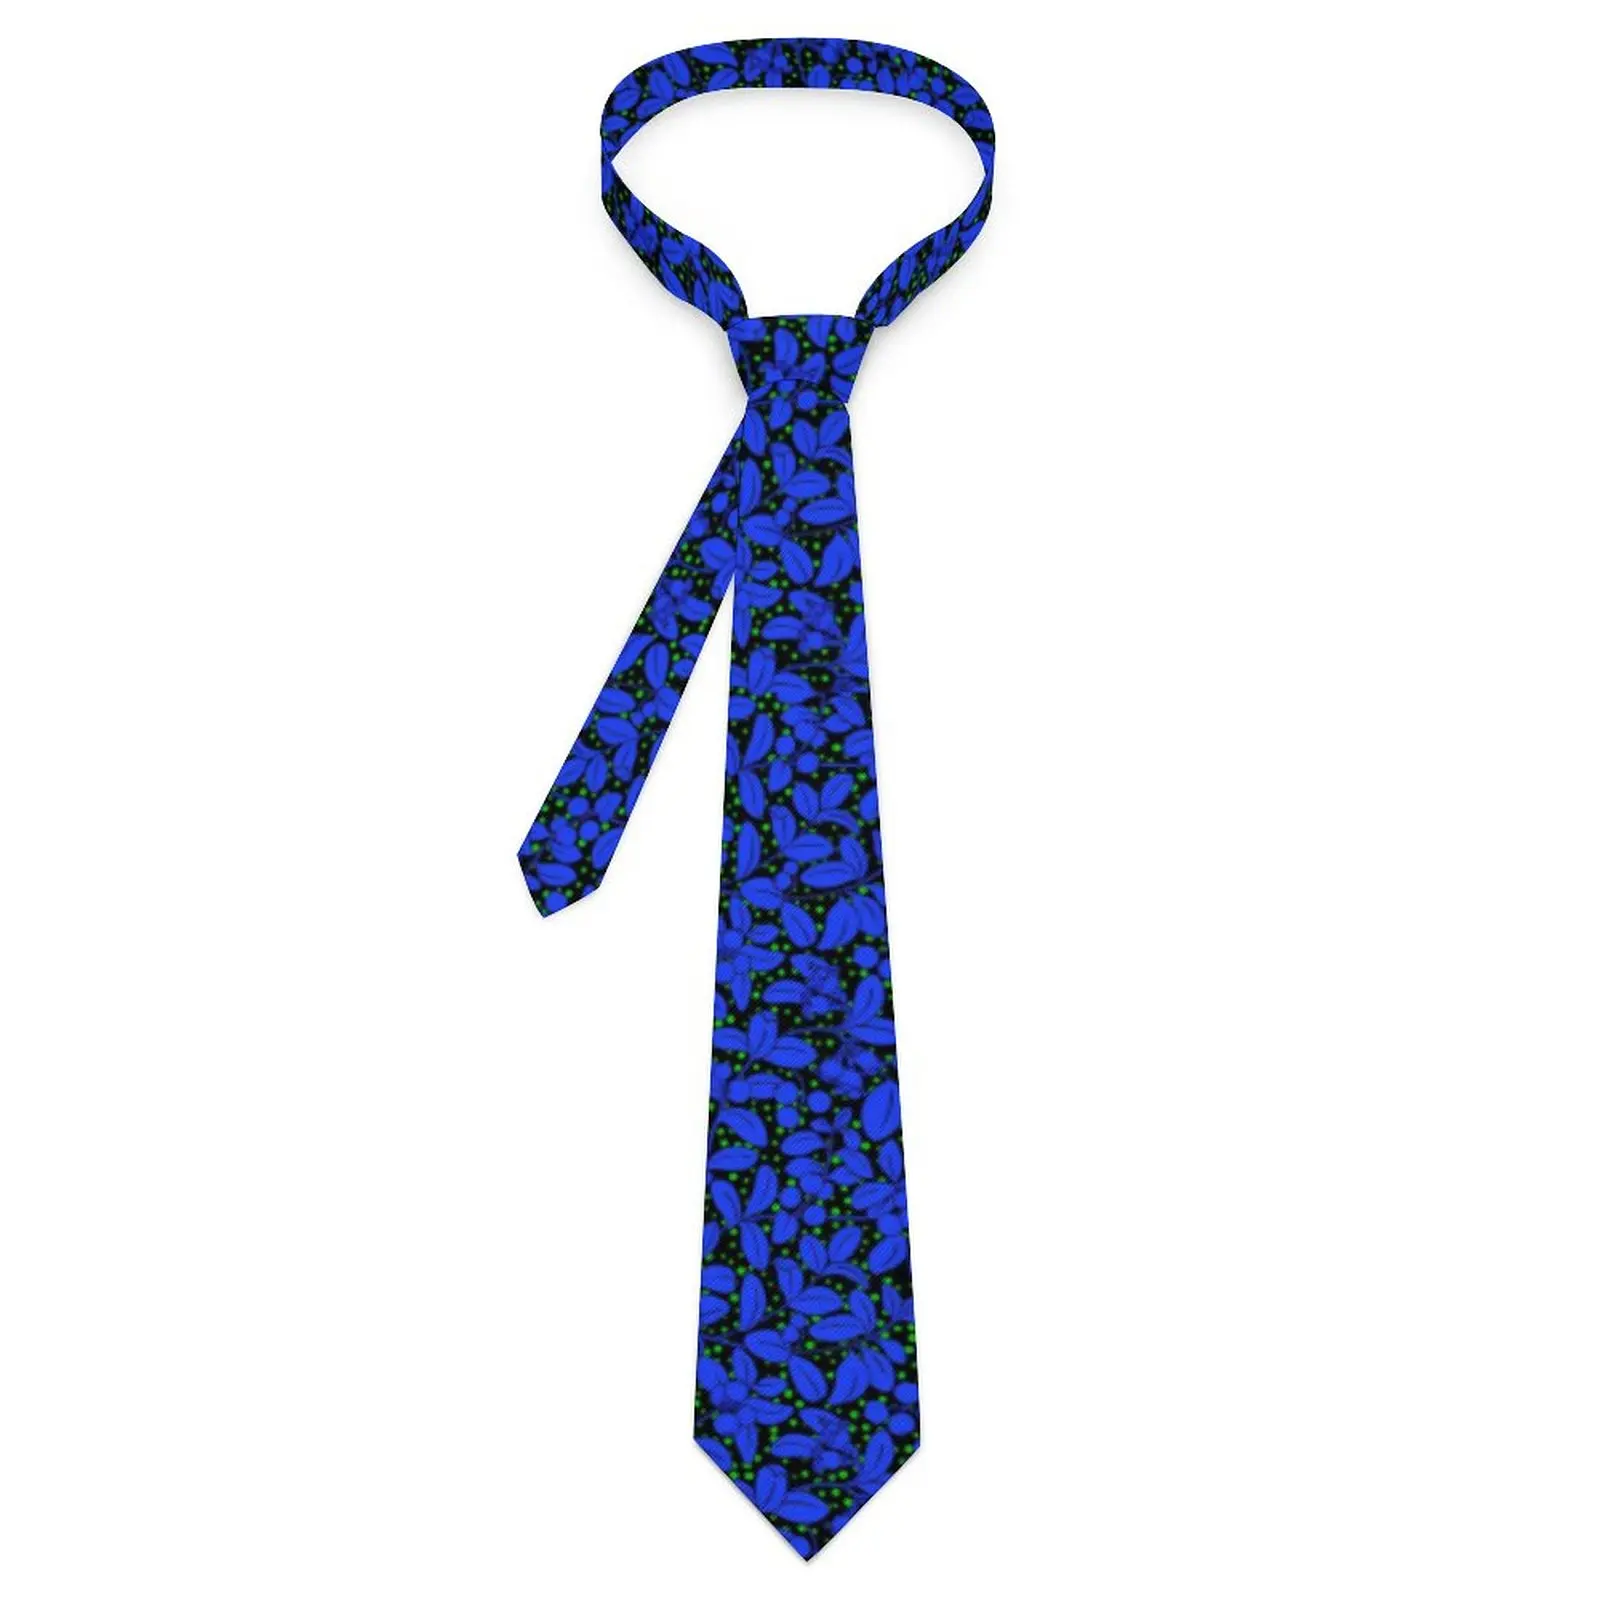 

Галстук с голубым растением, галстук с принтом листьев, деловой галстук для мужчин и женщин, новинка, повседневный галстук с индивидуальным дизайном